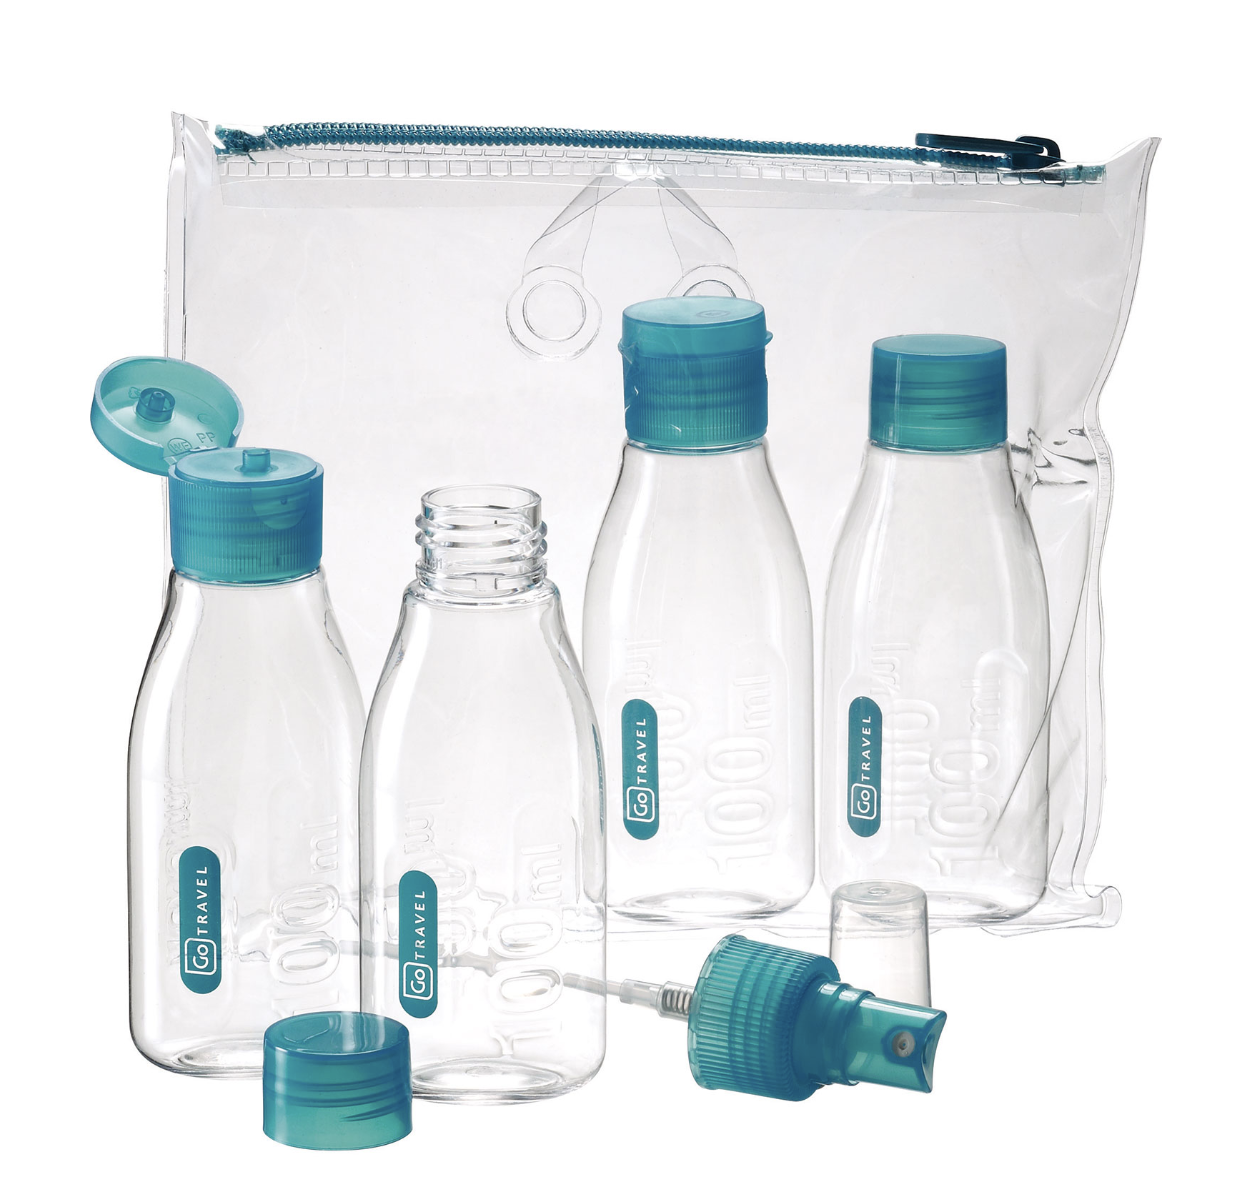 Travel bottle kit